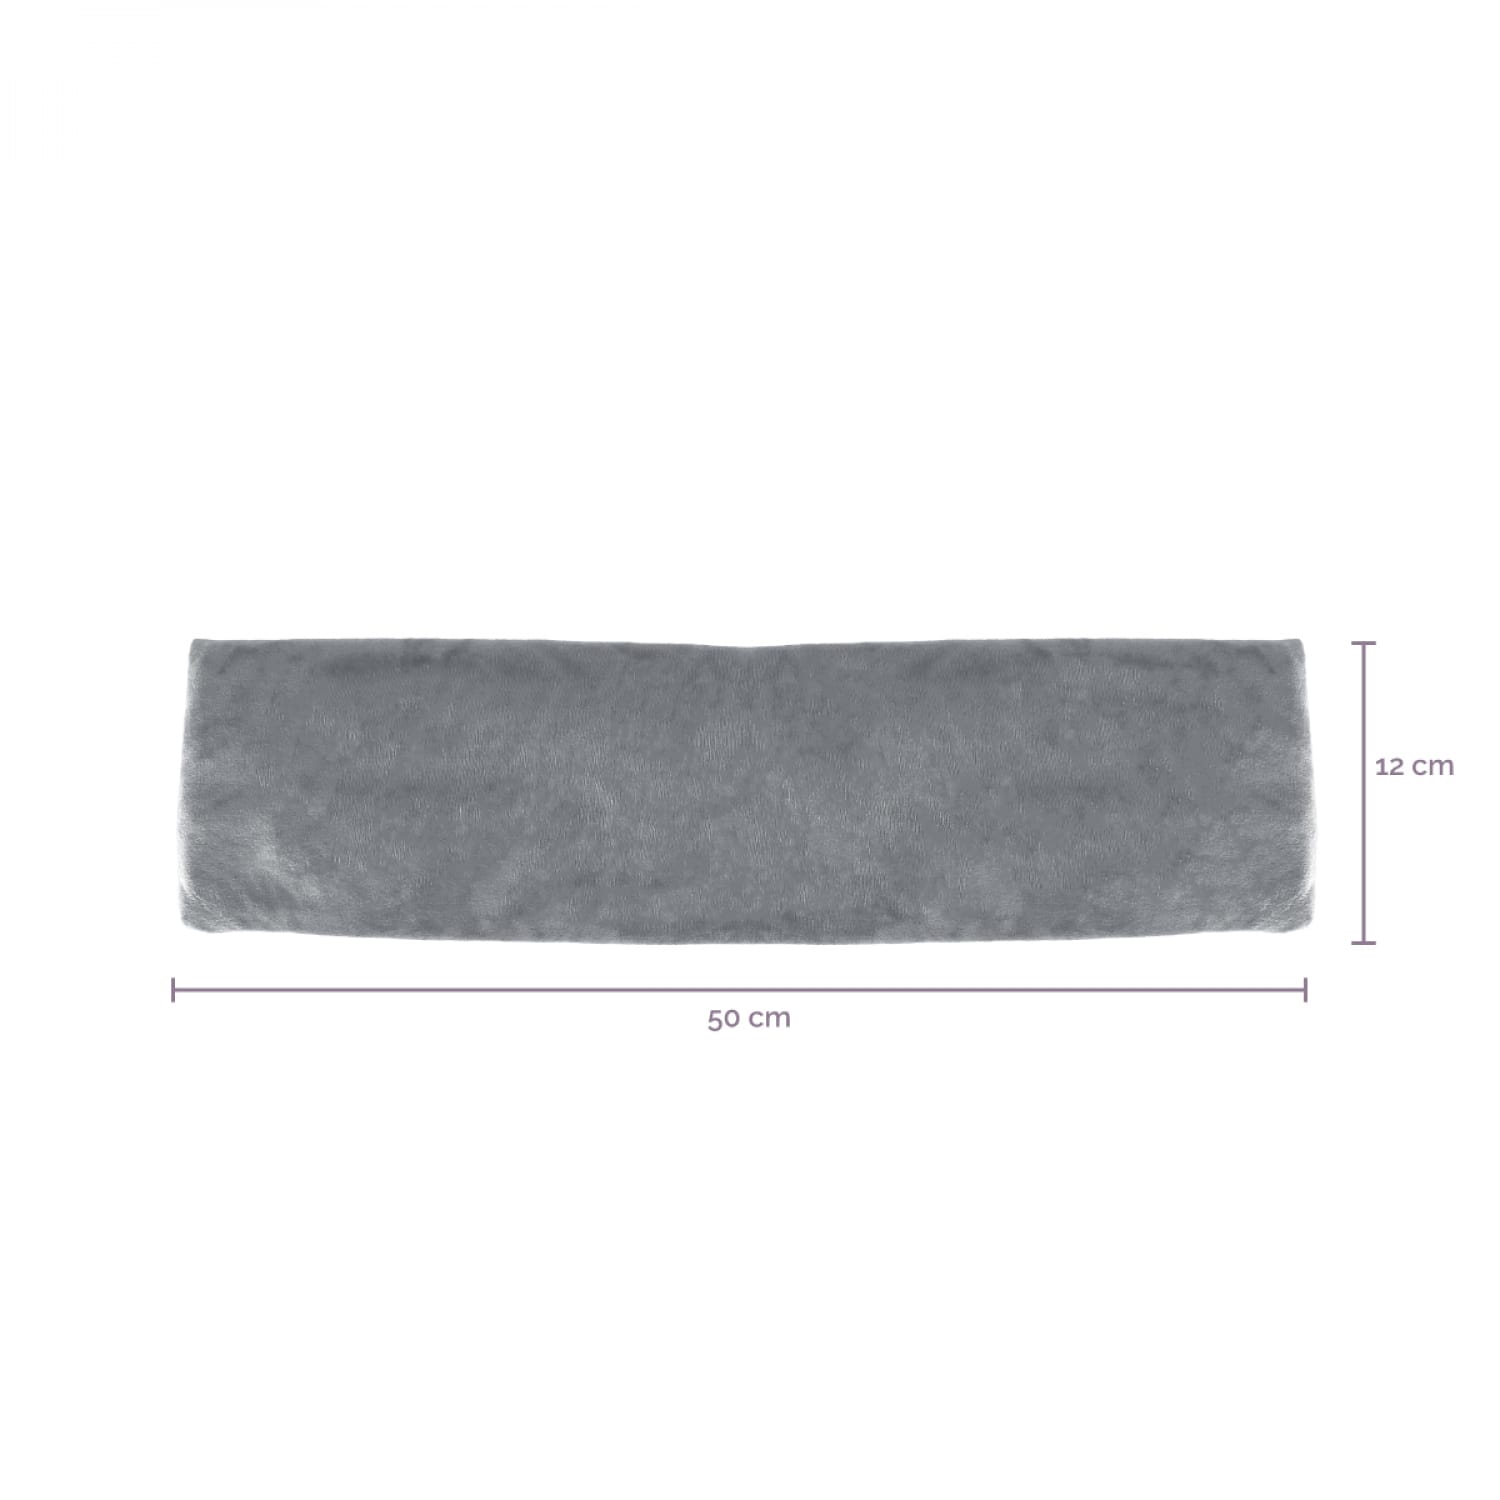 Tour de cou chauffant 50 x 12 cm - gris